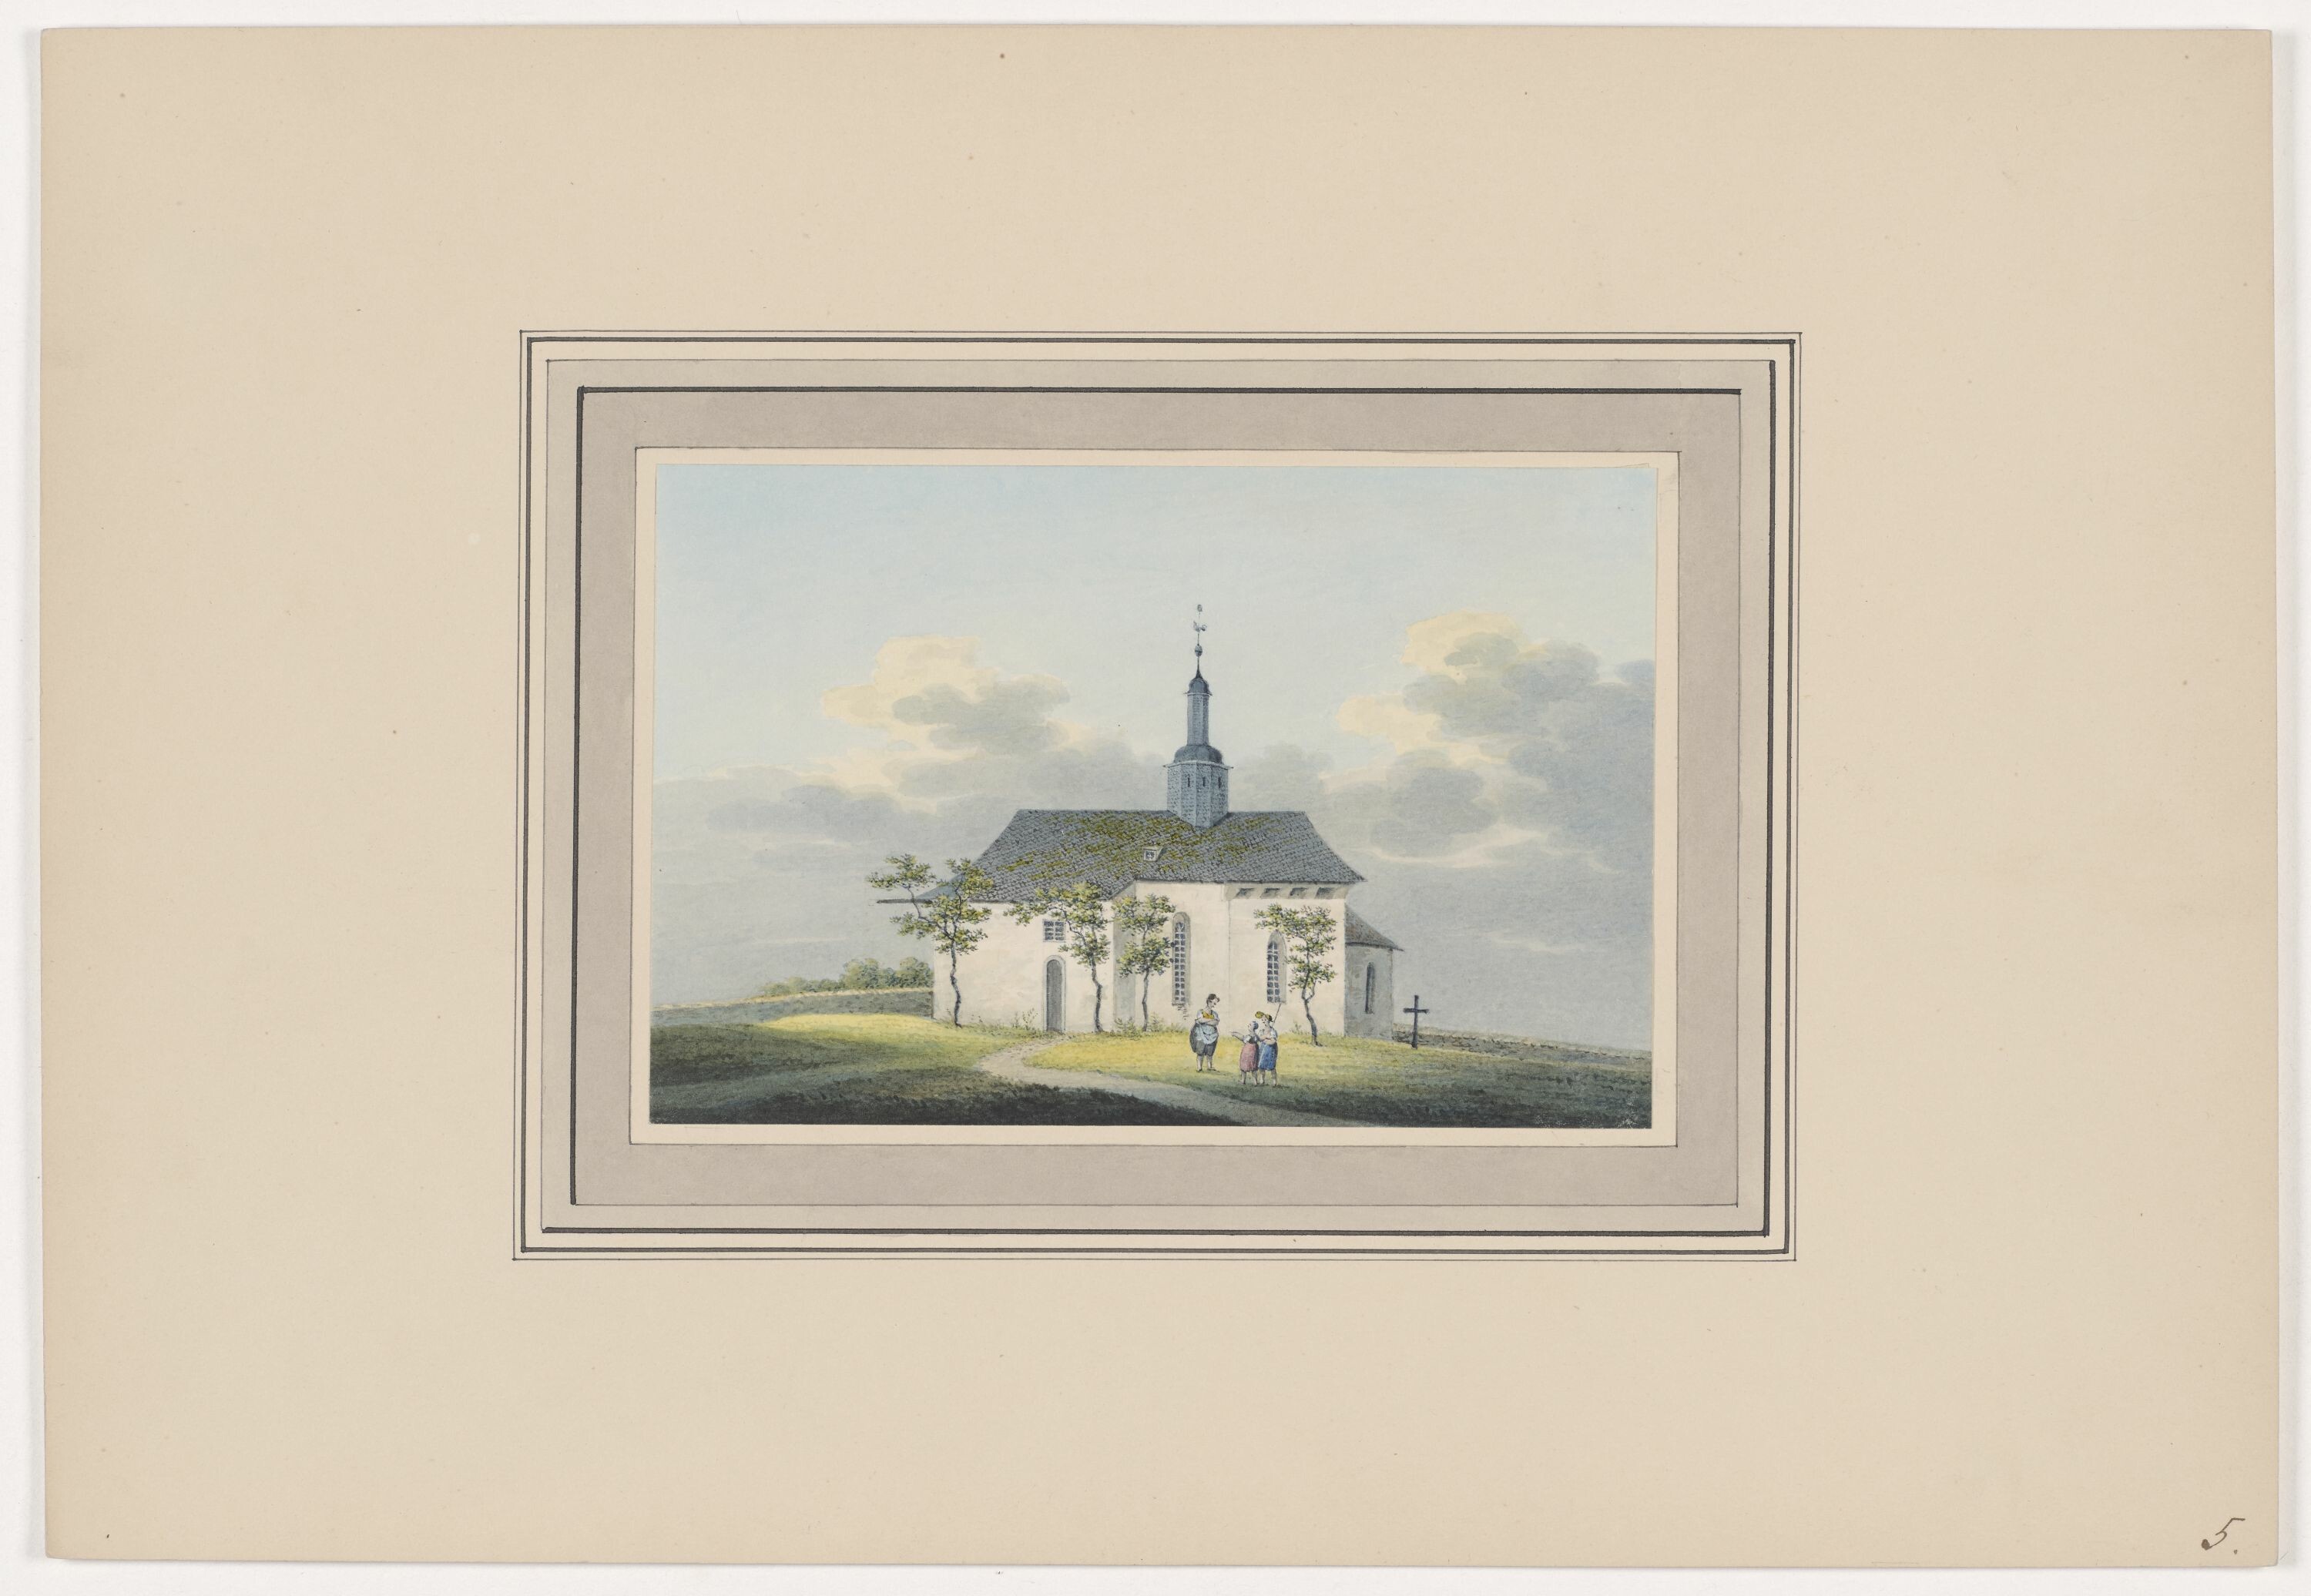 Kirche zu Crinitz, aus Mappe: Dorfkirchen der Ephorie Zwickau, Blatt 5 (KUNSTSAMMLUNGEN ZWICKAU Max-Pechstein-Museum RR-F)